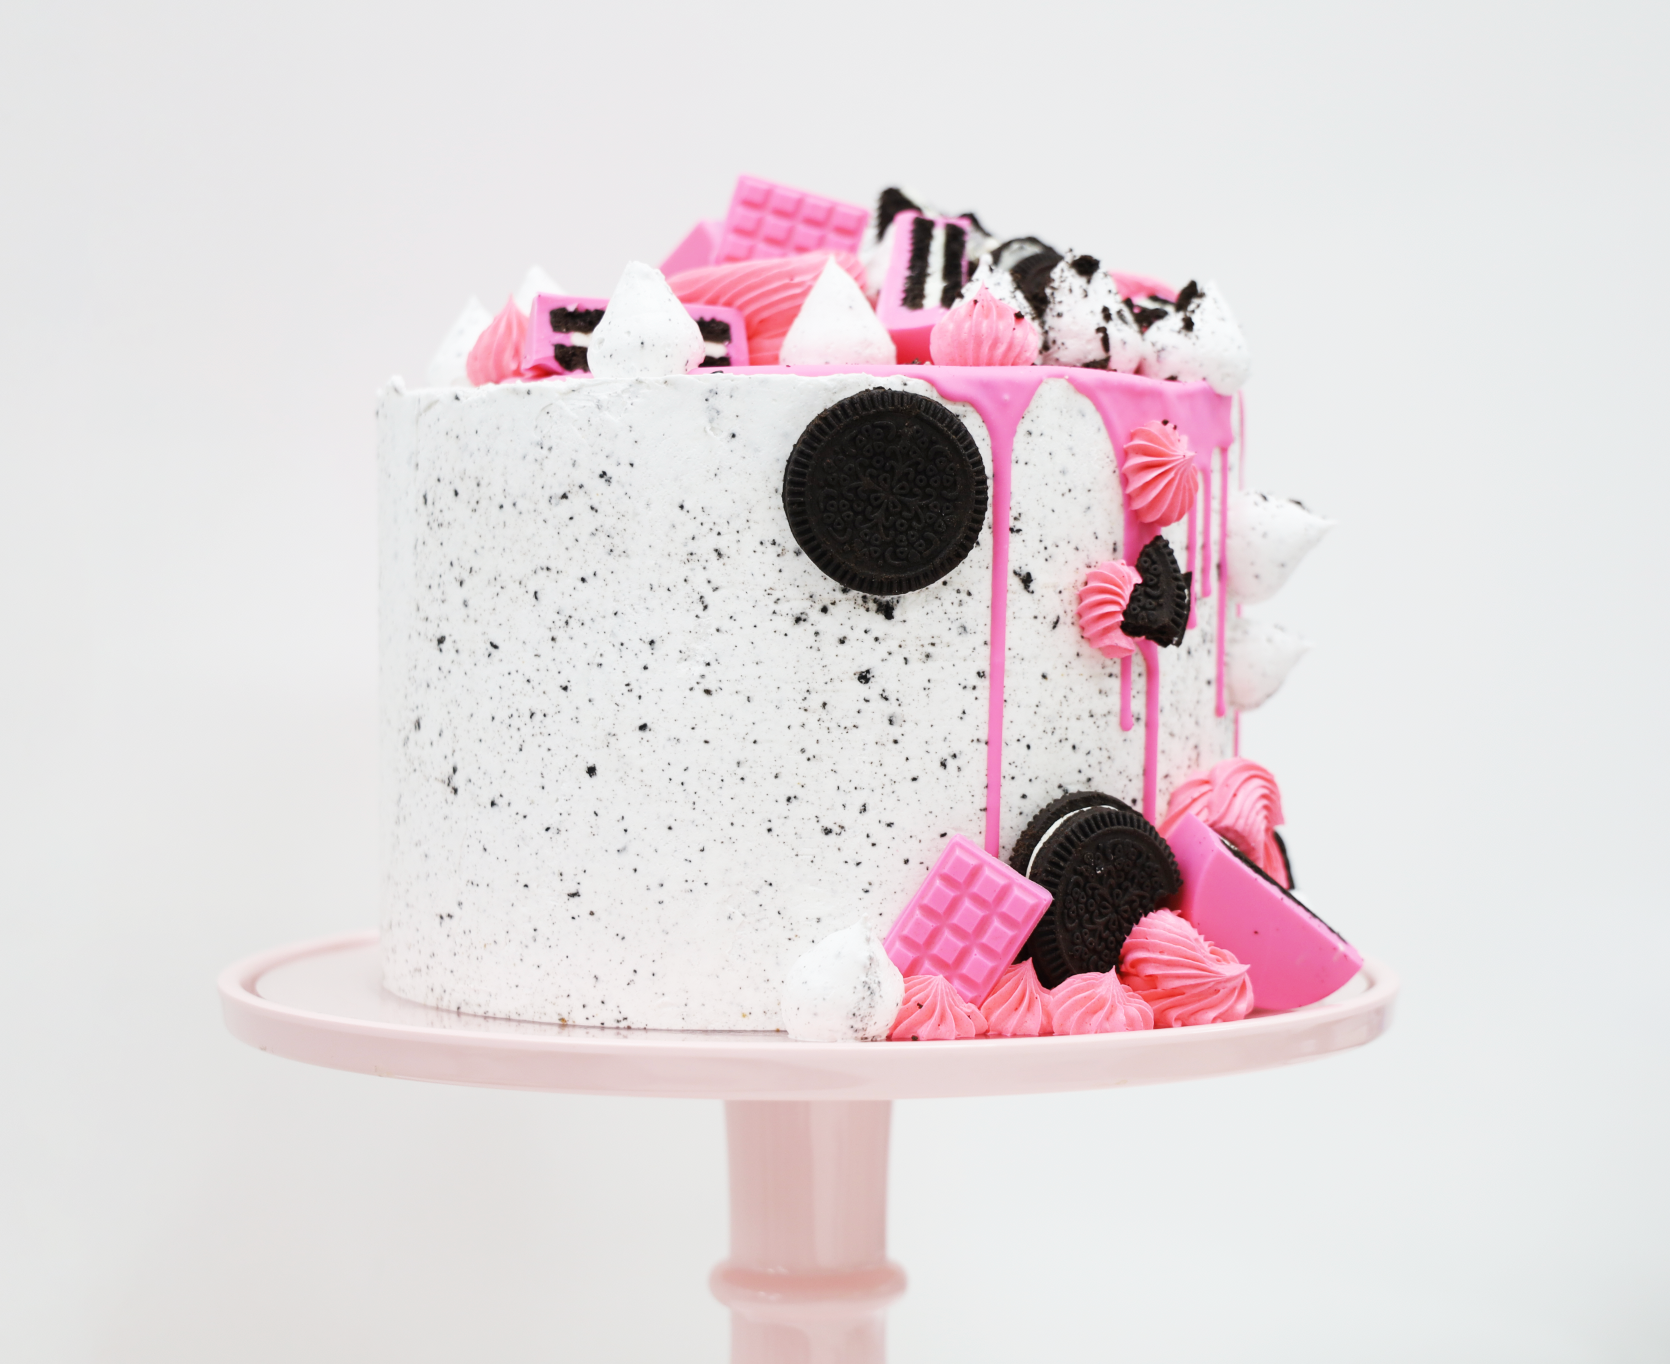 Hot Pink Oreo Explosion Celebration Cake